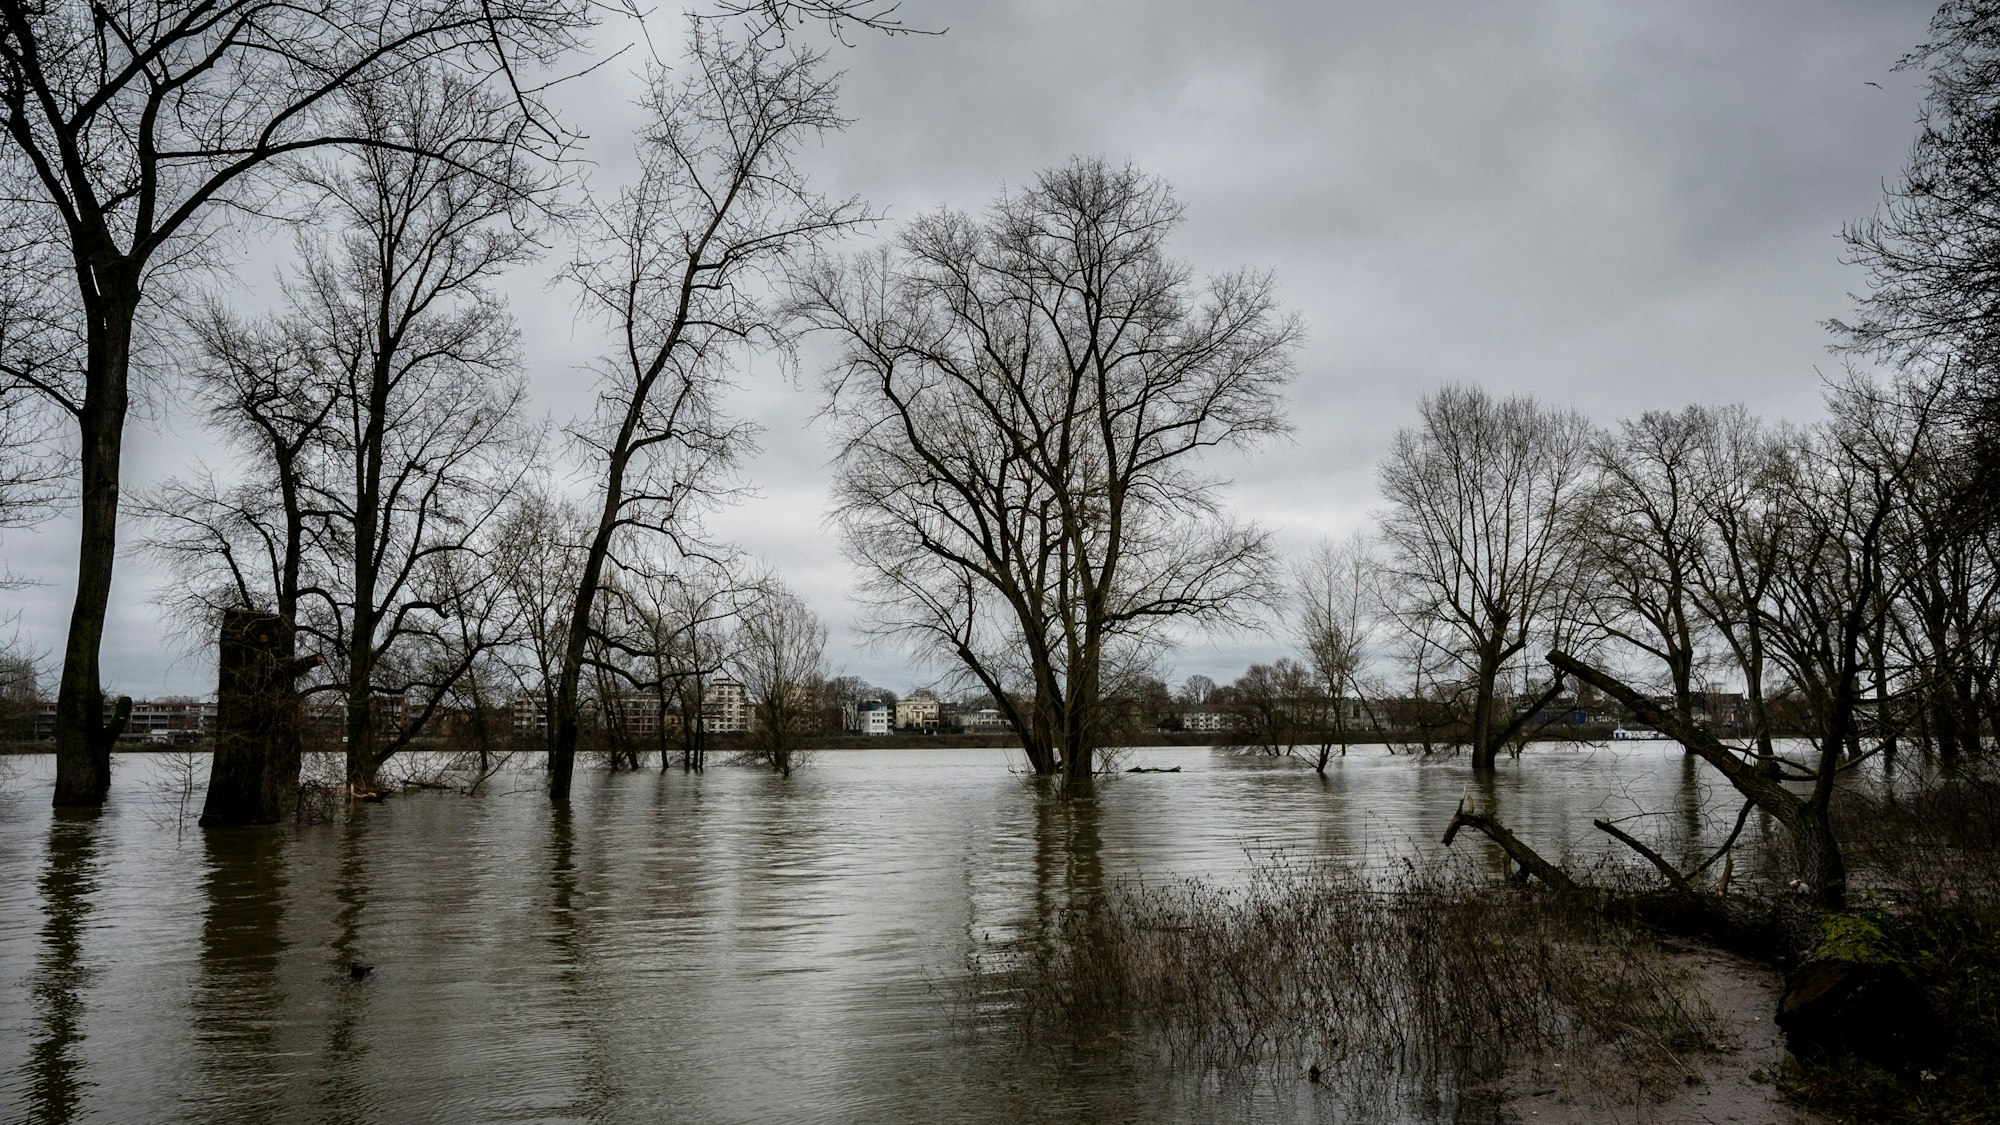 24.12.2023, Köln: Die Bäume am Rheinufer in Niehl stehen im Wasser. Der Rhein führt Hochwasser, pegelstand ist 7,43m Kölner Pegel. Foto: Uwe Weiser